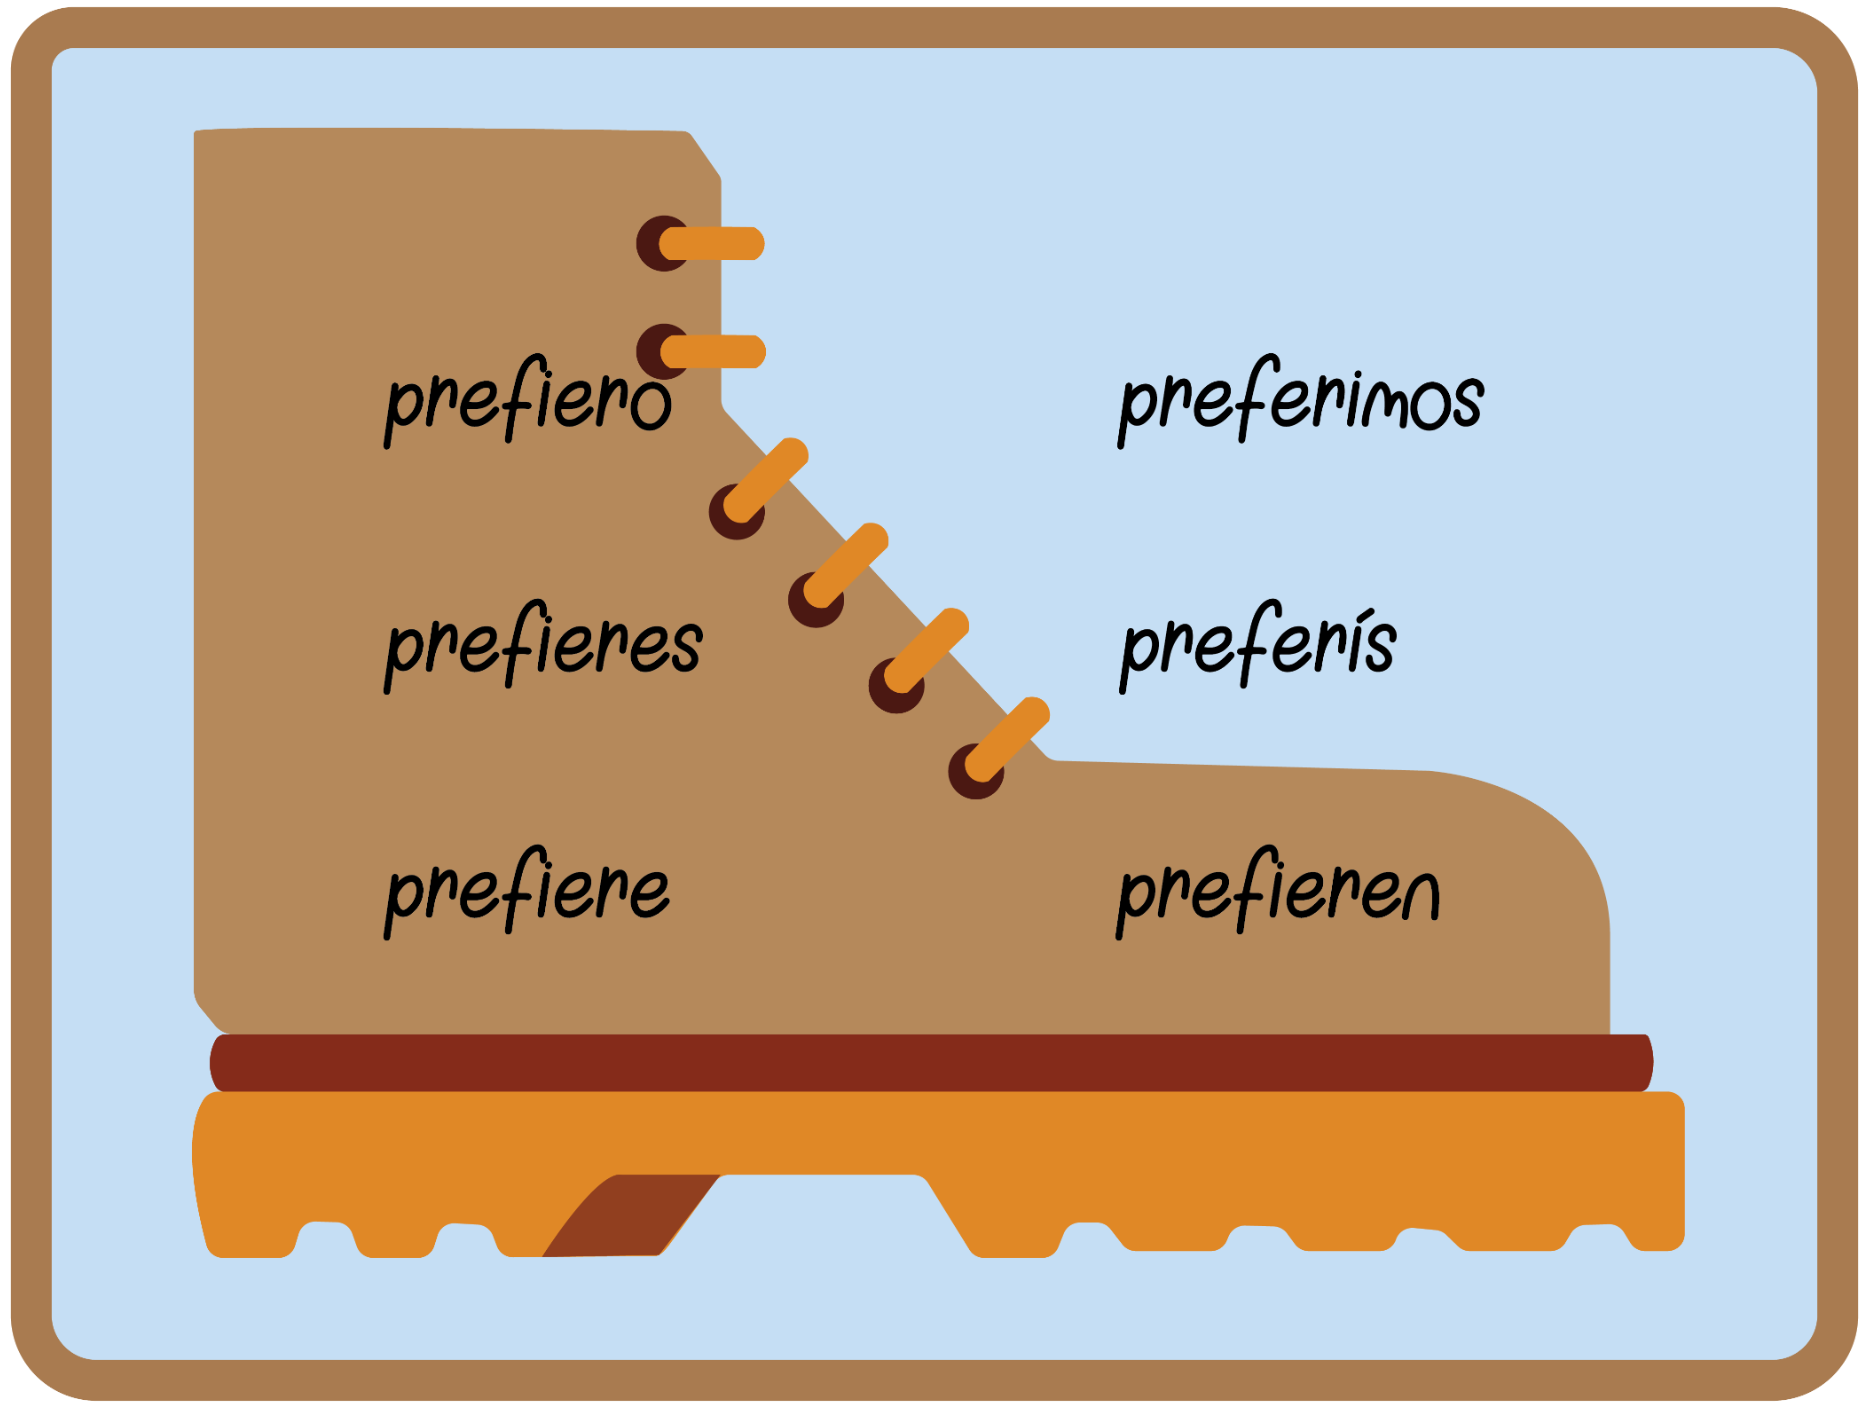 Imagen de una bota avec el verbo preferir conjugado en el presente del indicativo